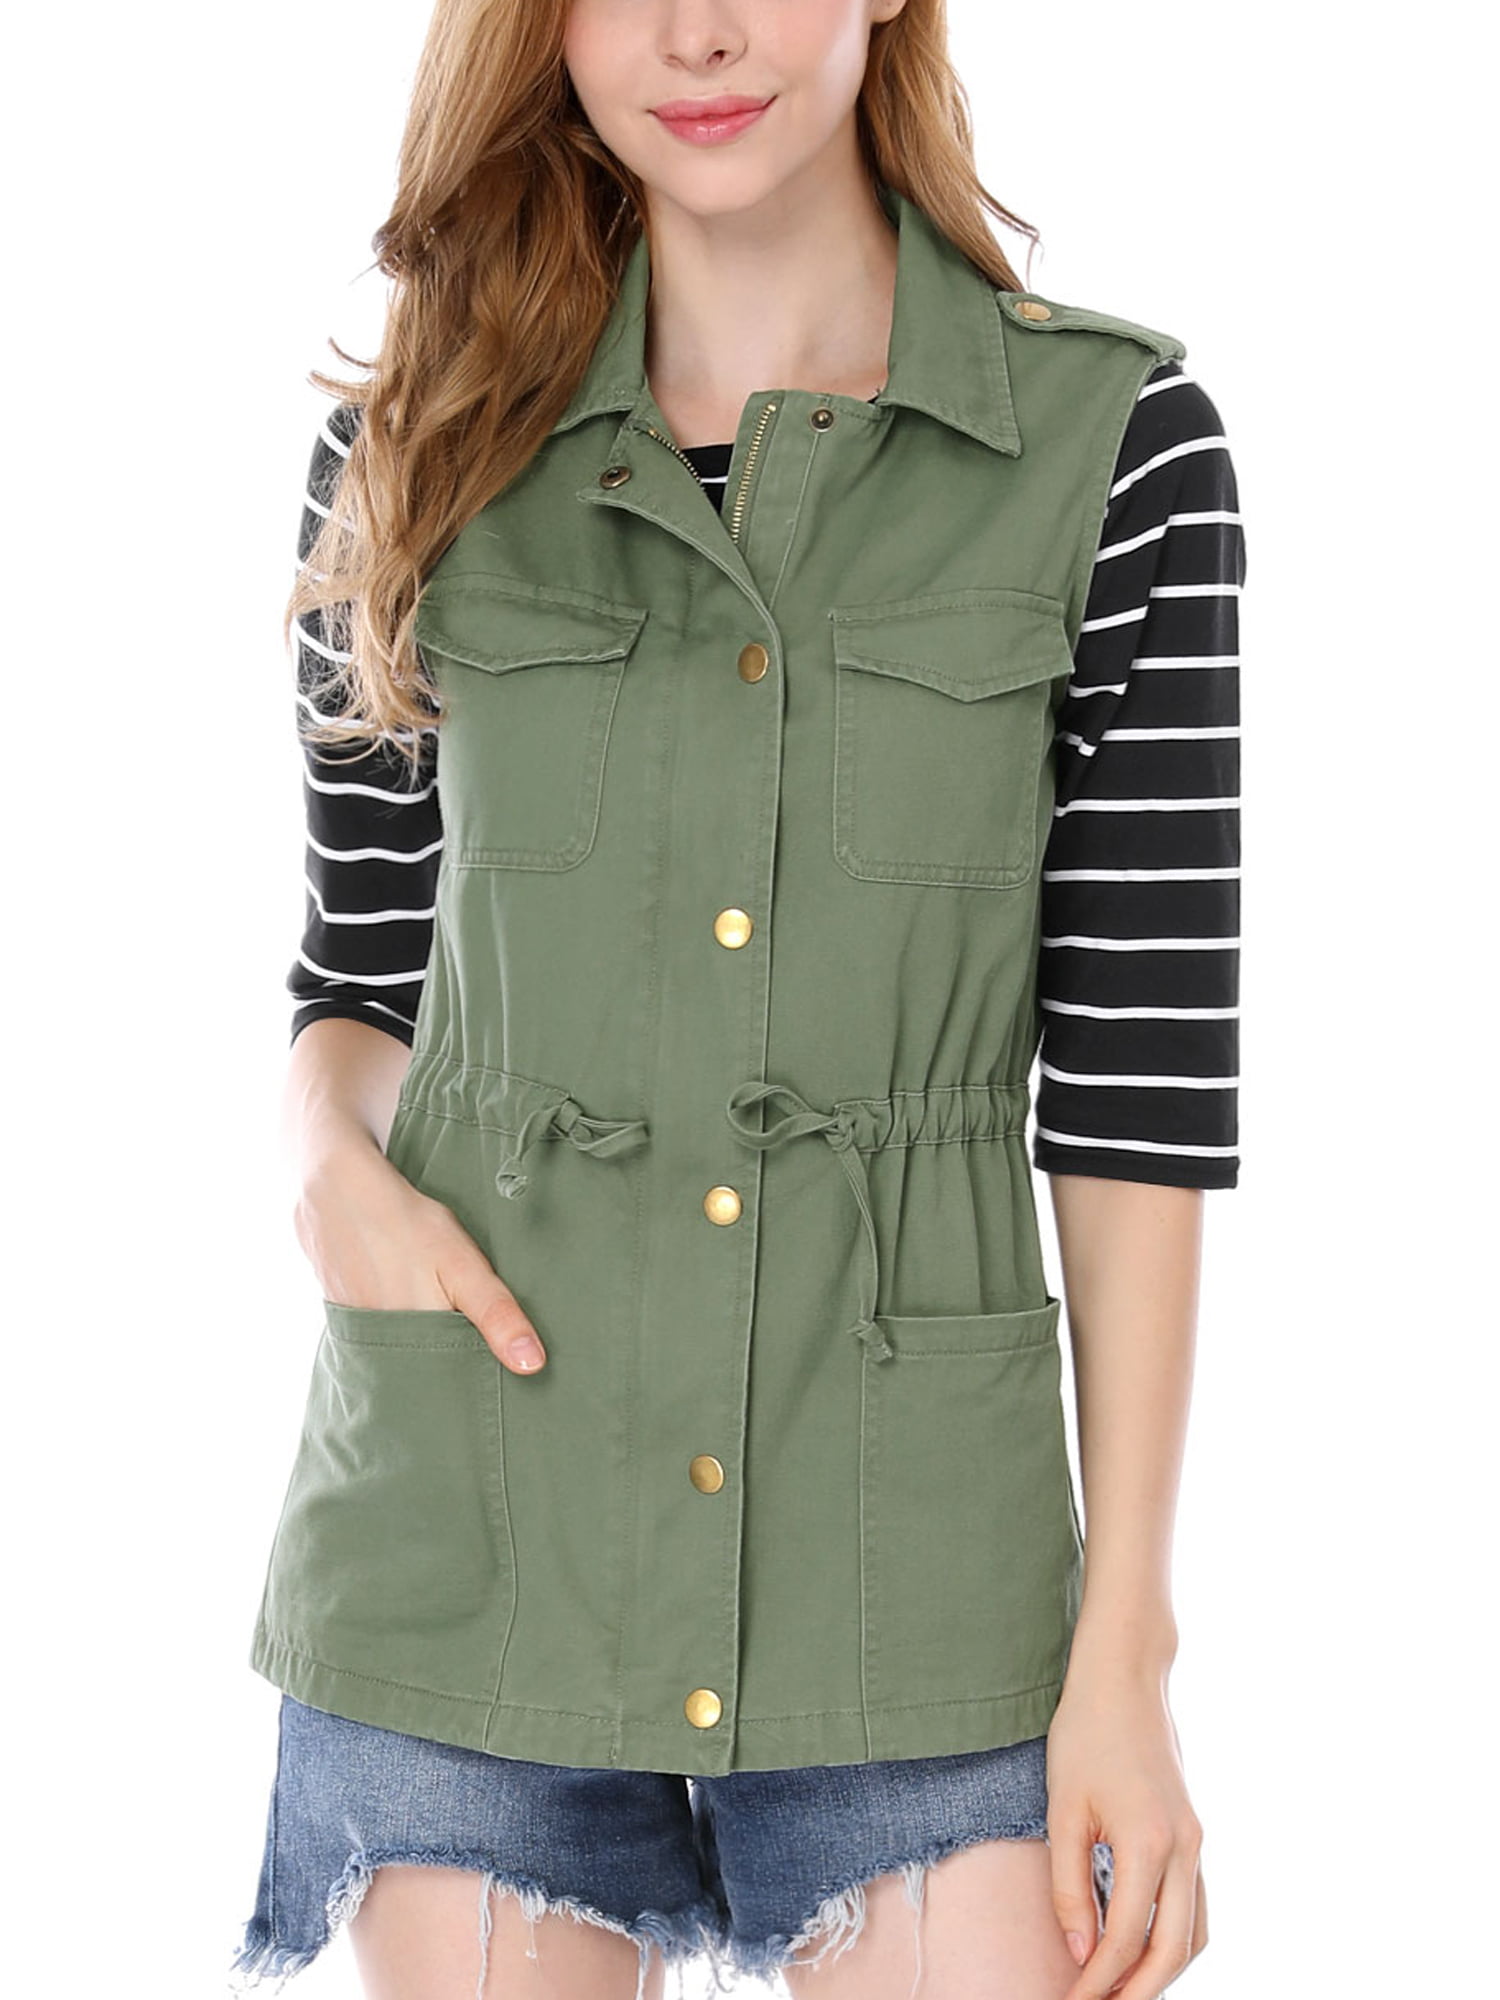 unique-bargains-women-s-drawstring-utility-anorak-cargo-vest-jacket